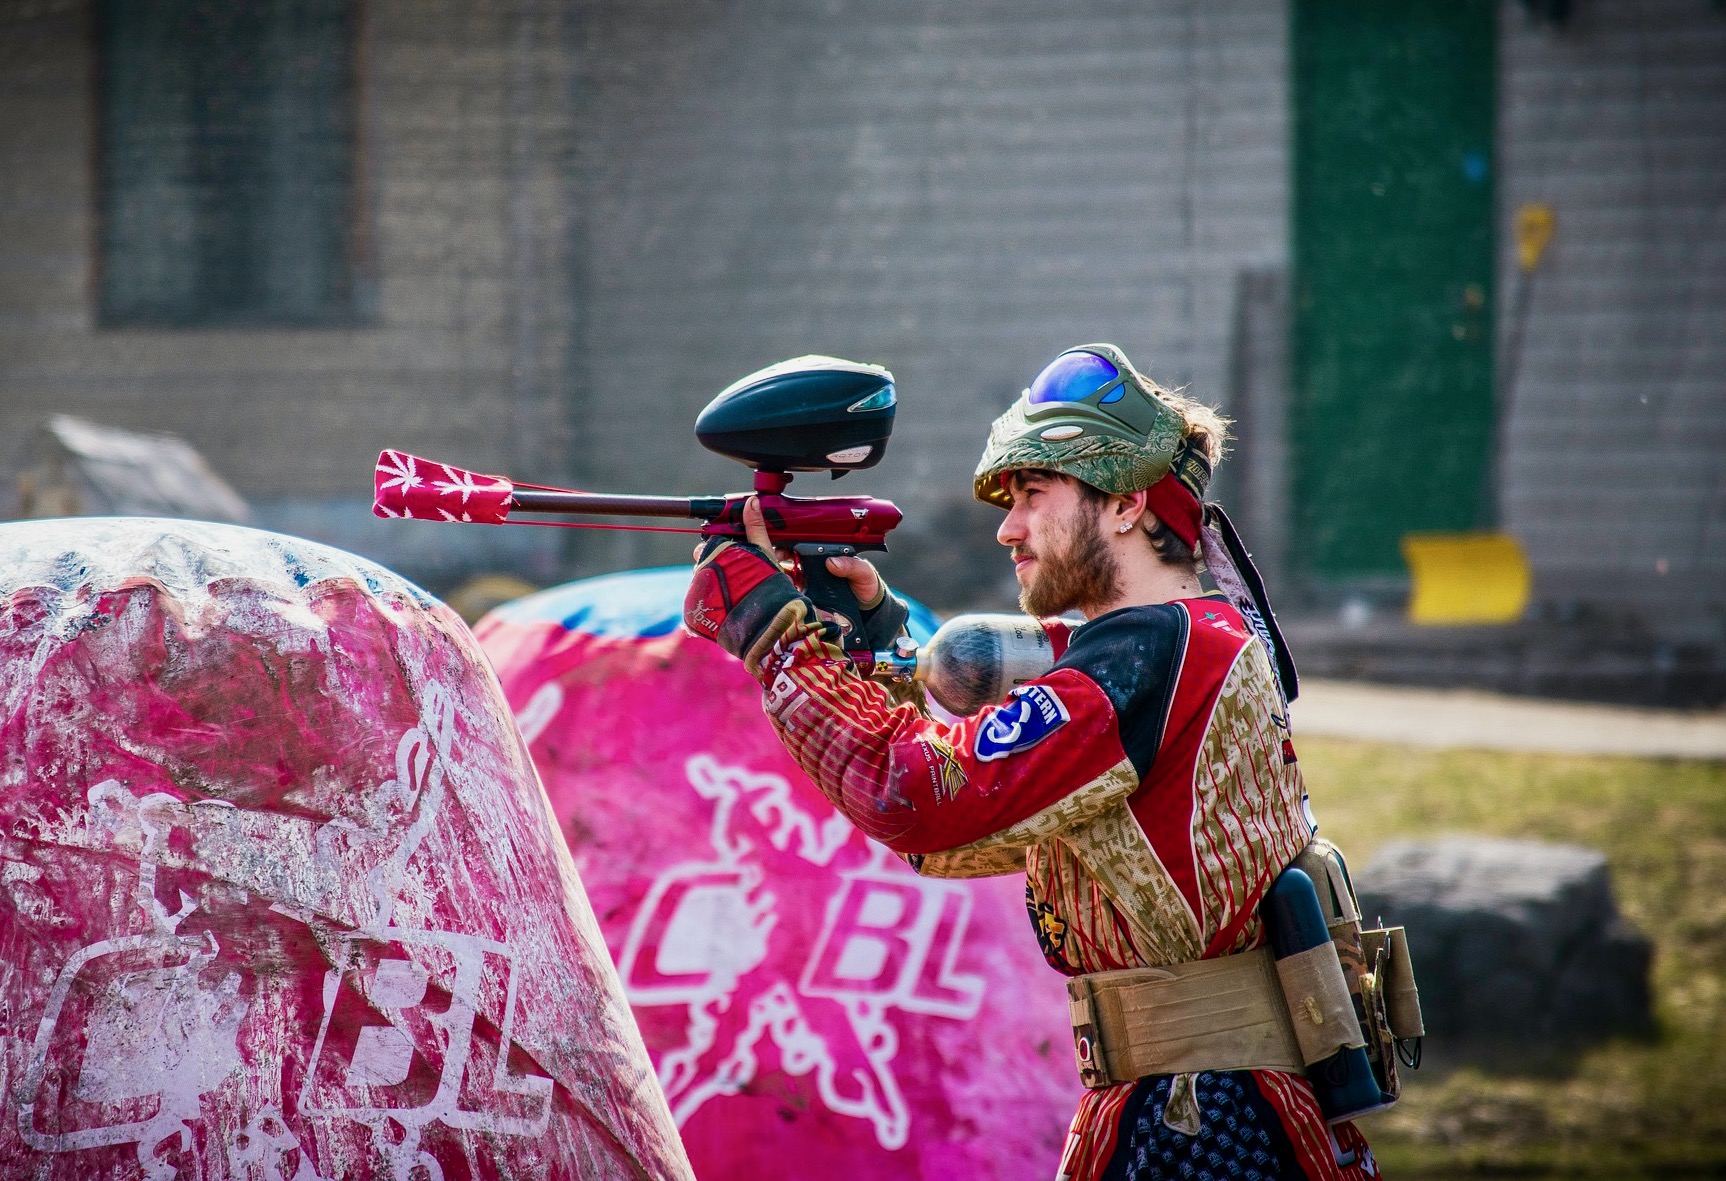 Un hombre vestido con ropa protectora está apuntando con su pistola de paintball listo para disparar.